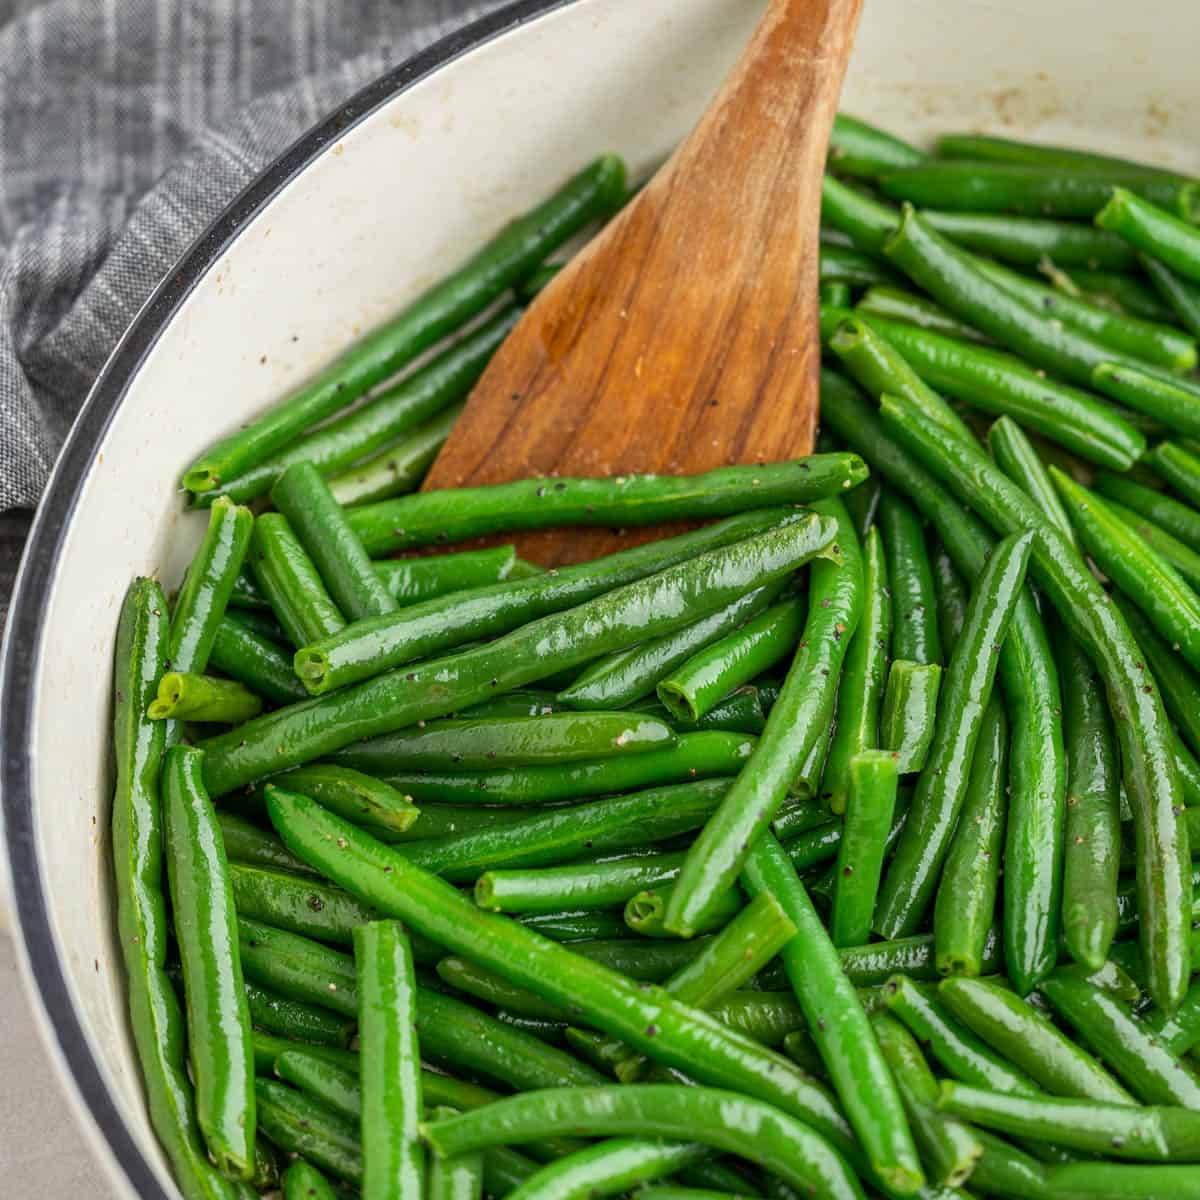 Green beans from frozen.